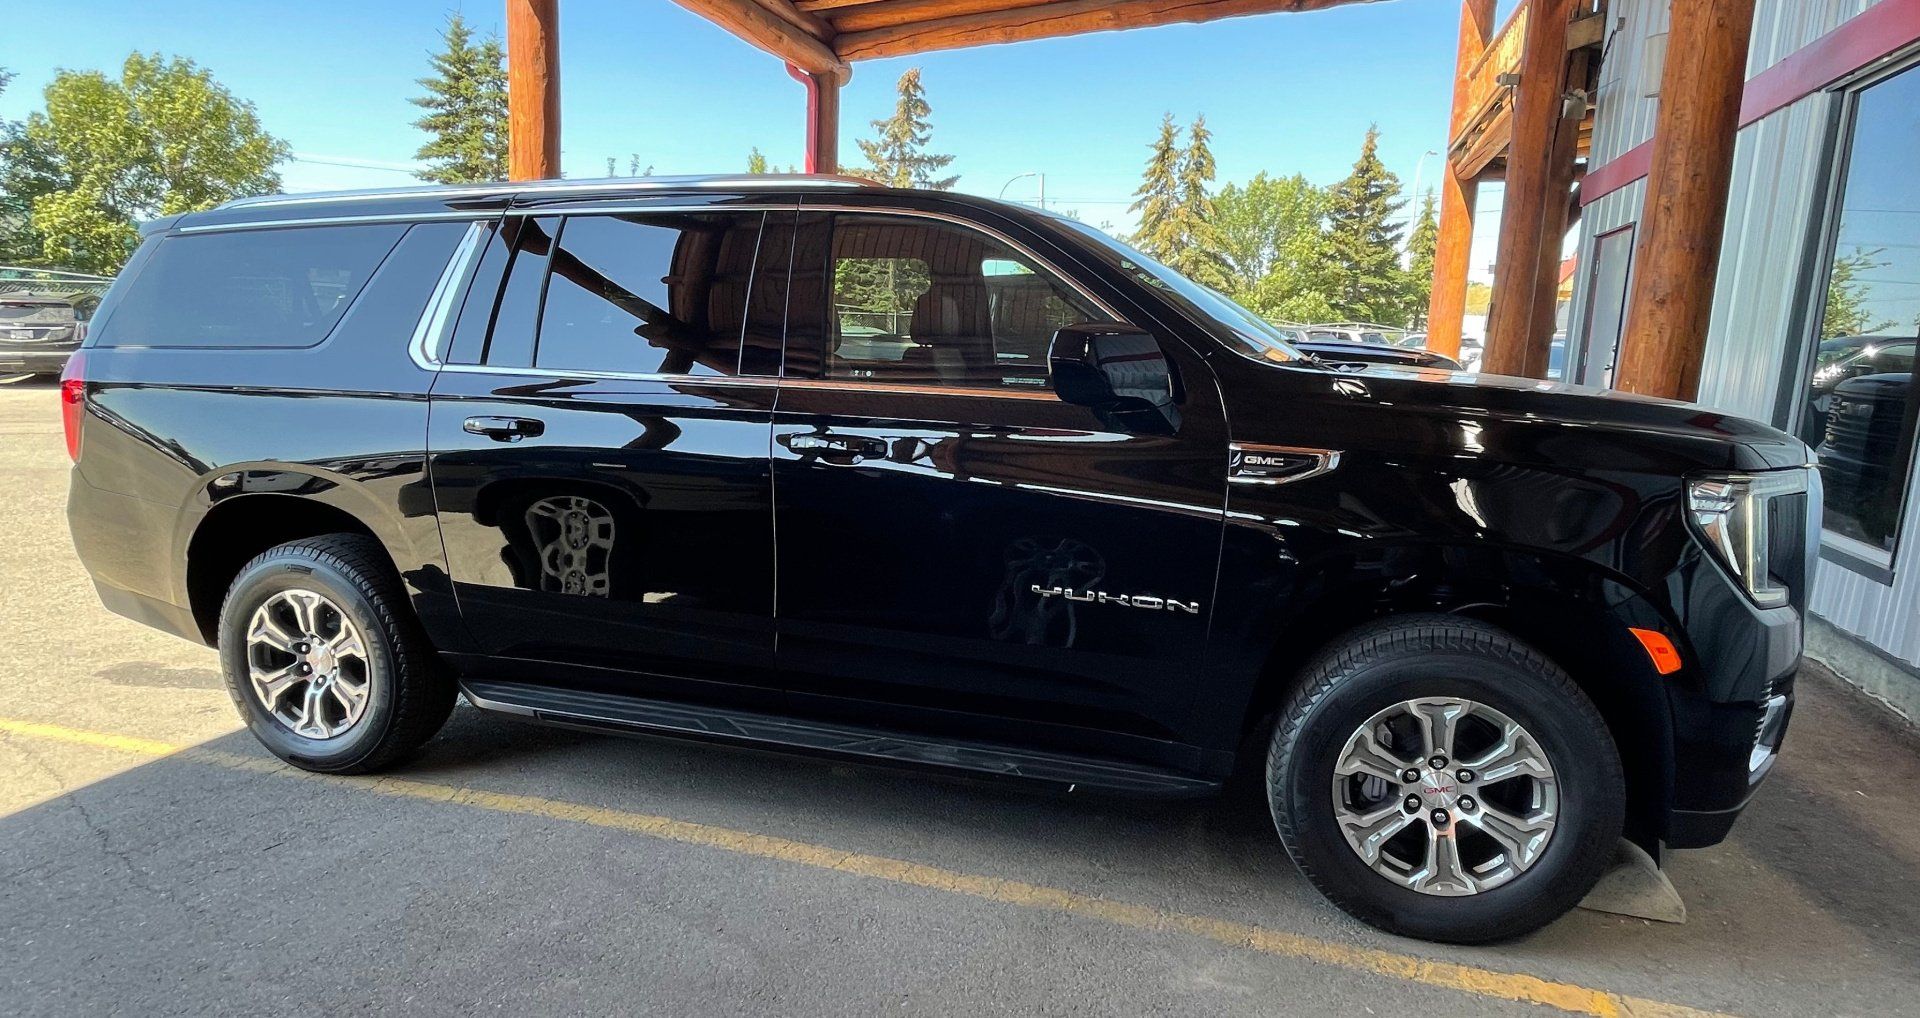 black Limo To Go GMC Yukon luxury SUV exterior